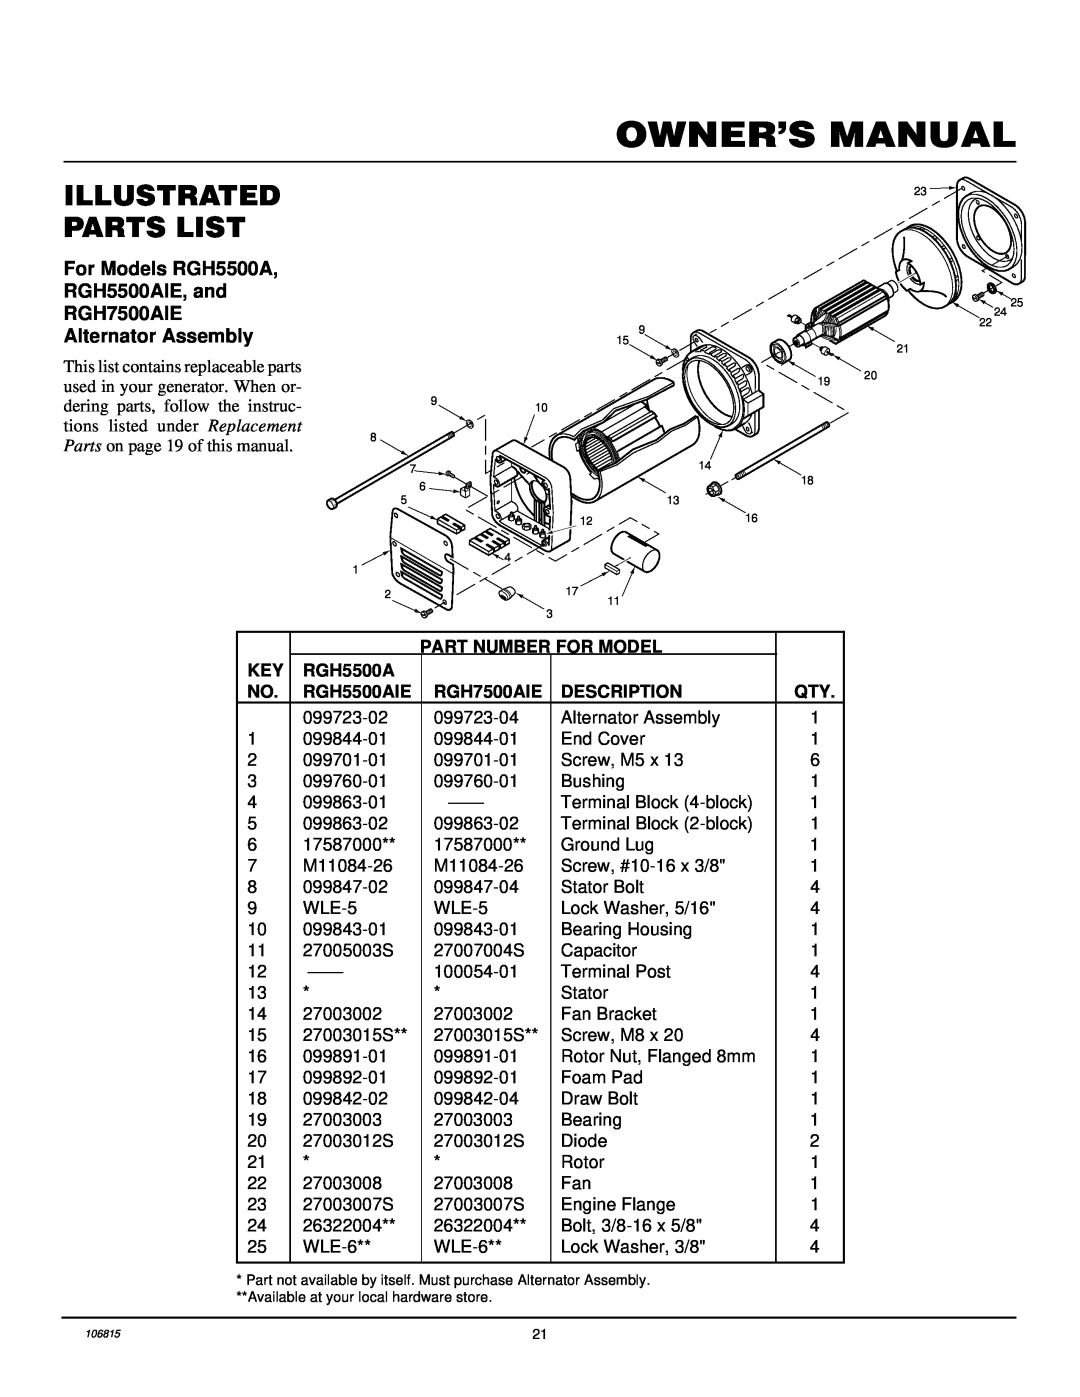 Desa Rgh3000, Rgh3000pr, Rgh5500a, Rgh5500aie, Rgh7500aie, And Rgh11000aie Illustrated Parts List, Alternator Assembly 